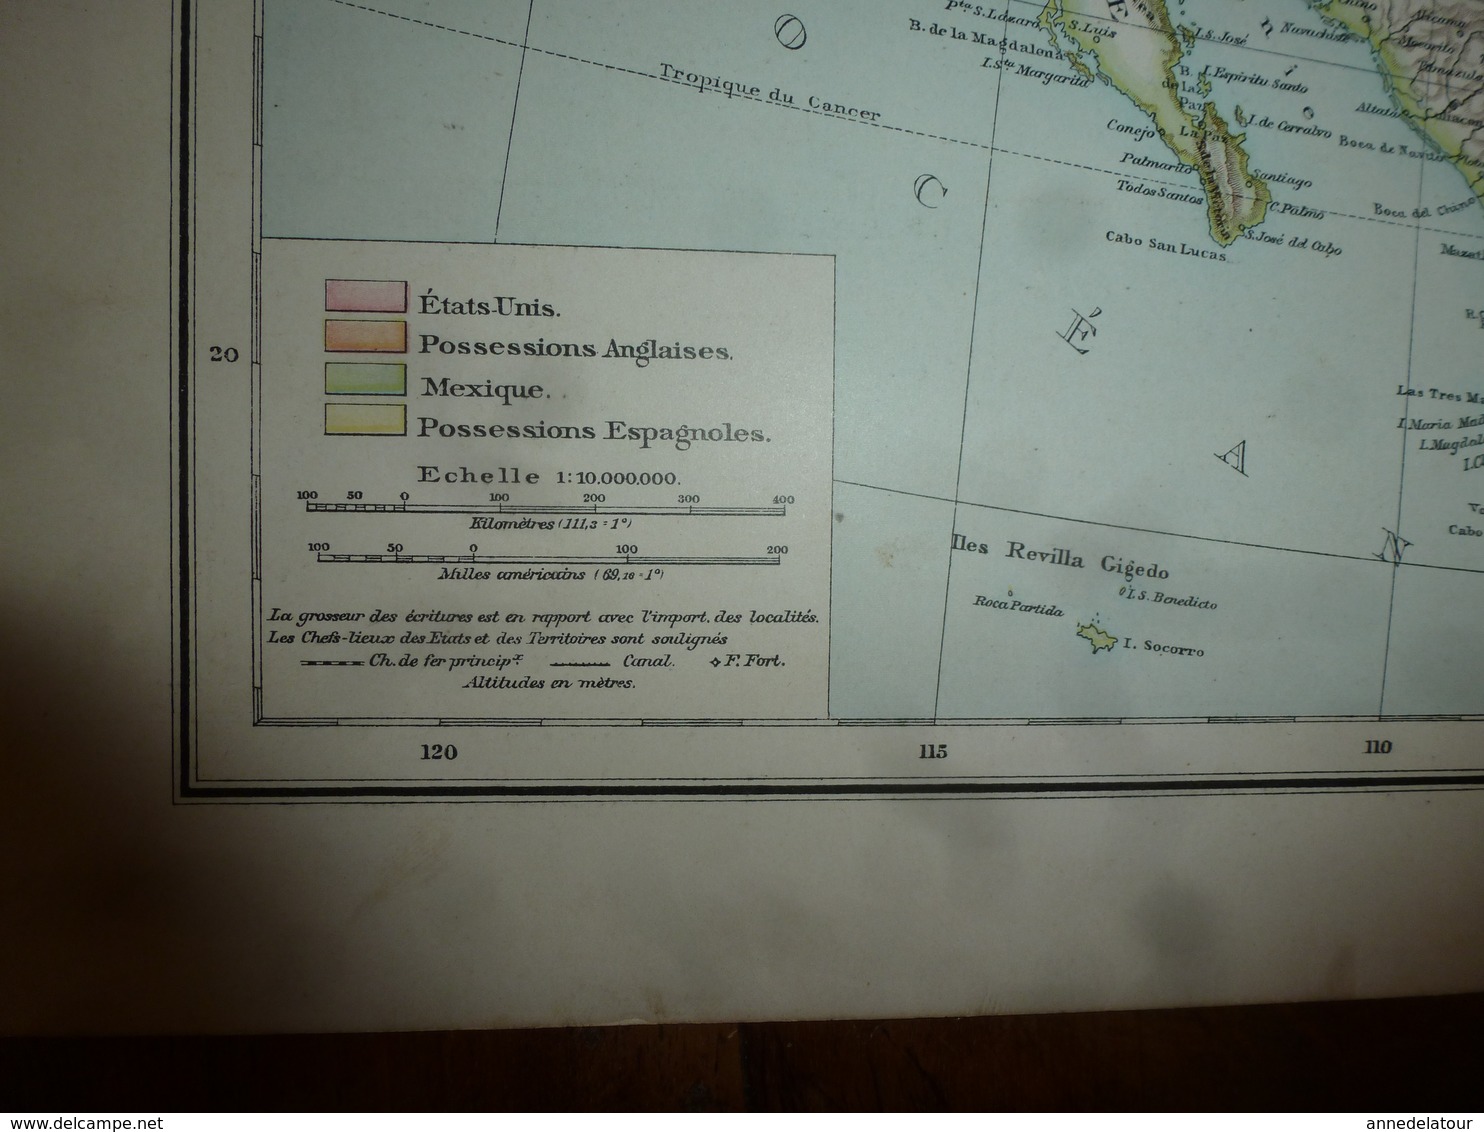 Carte Géographique De L'année 1884 ----> USA ; Mexique; Chili ; (Brésil Sud-Est); Uruguay ; - Cartes Géographiques